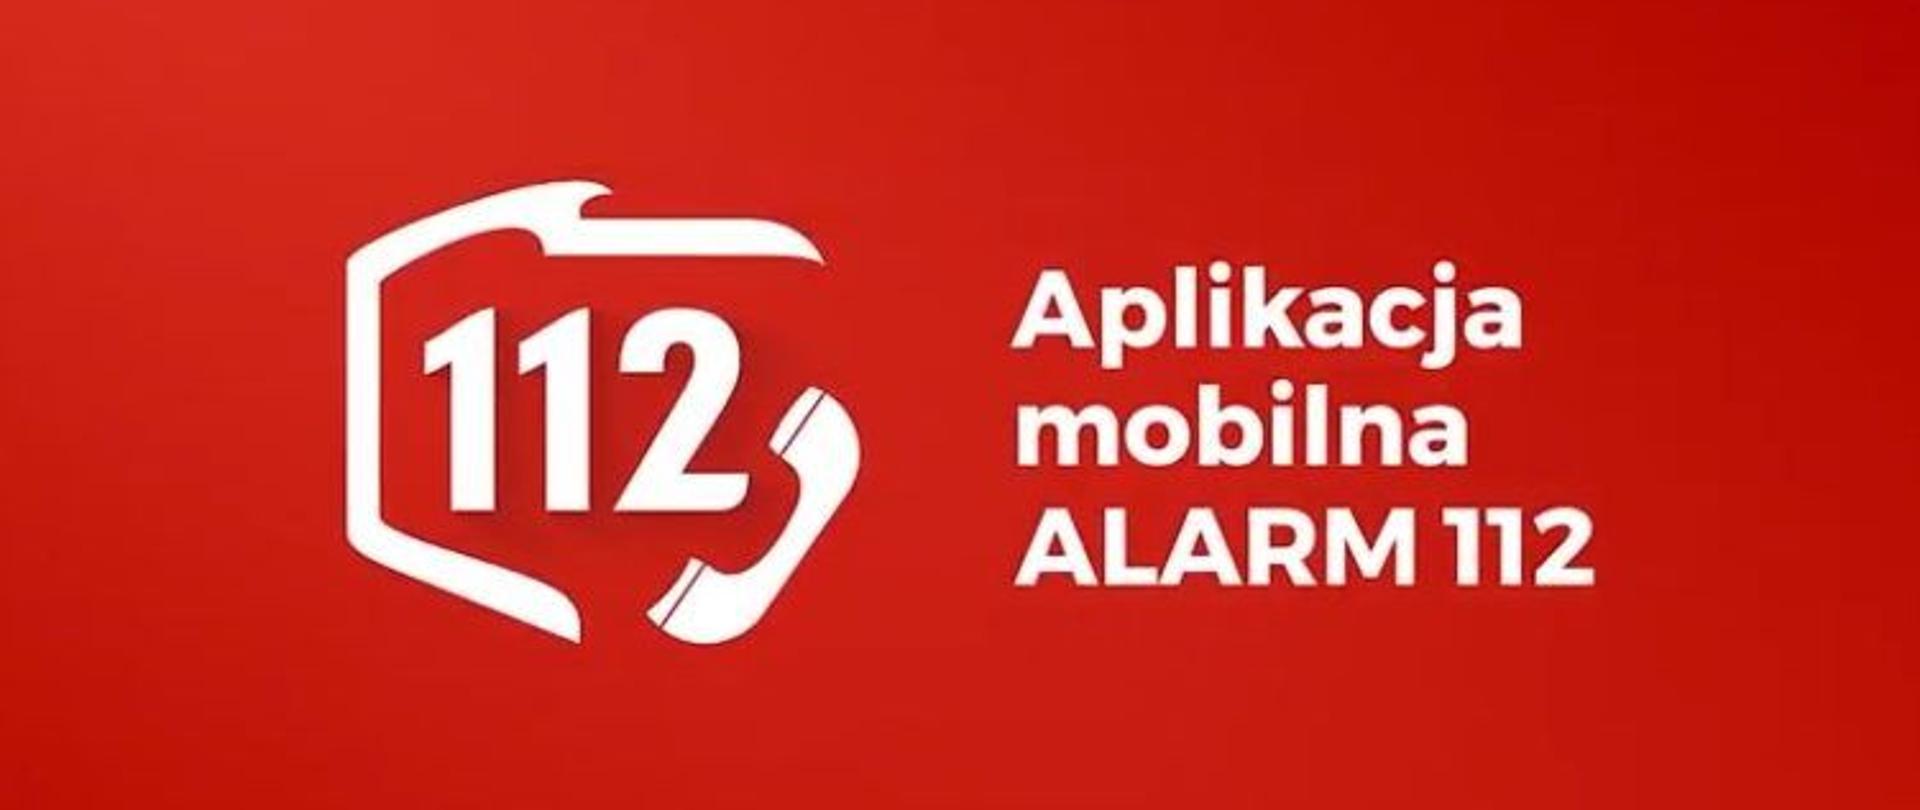 Aplikacja mobilna Alarm 112